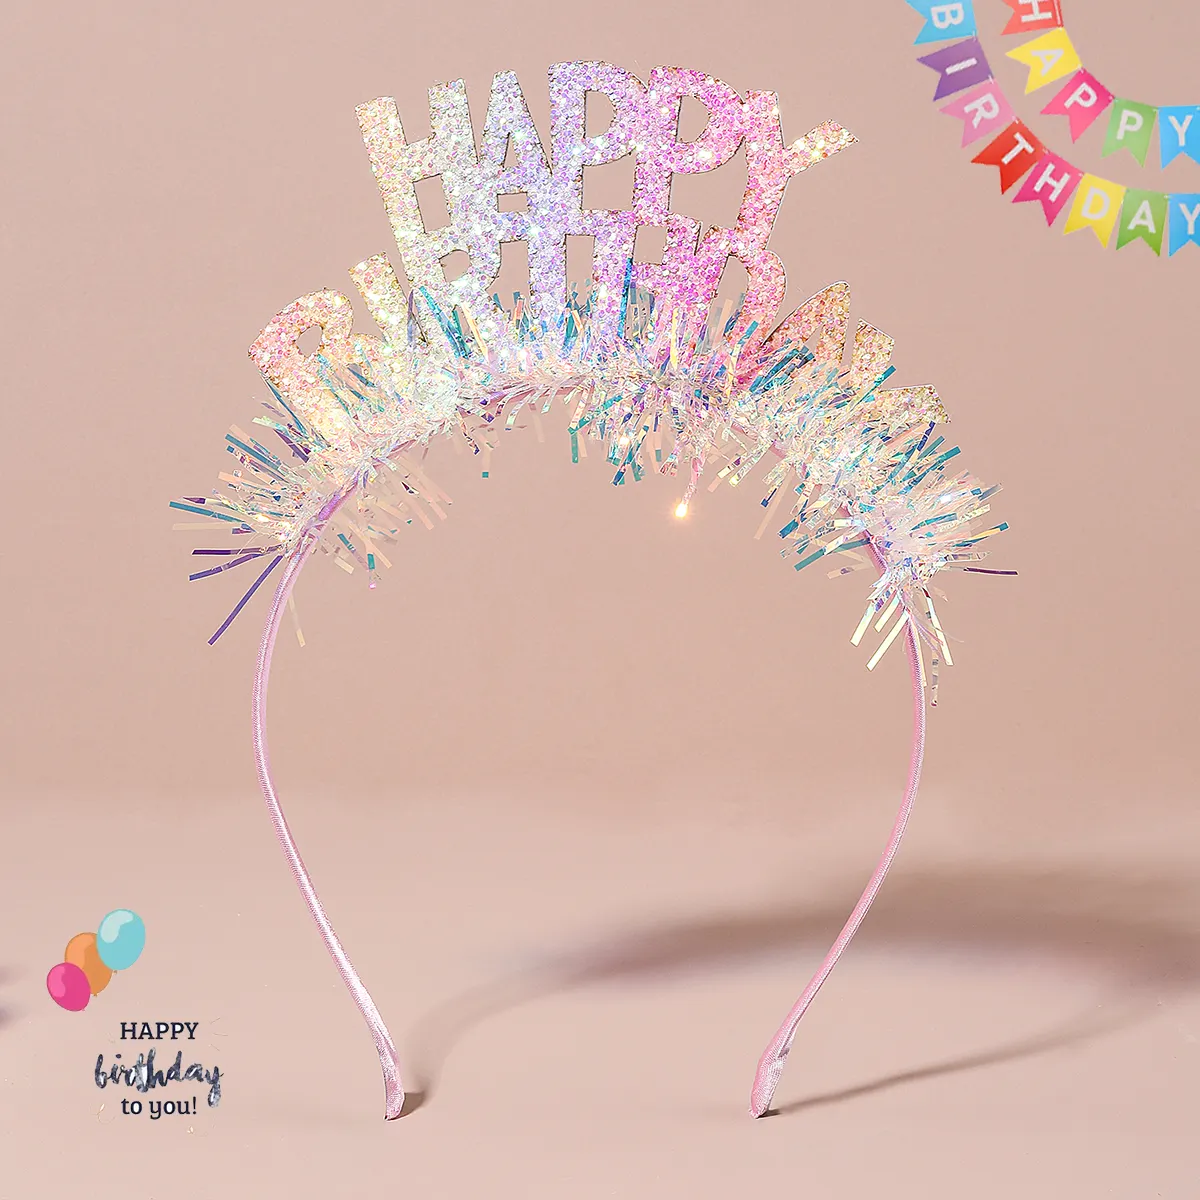 CN Kinder Geburtstag Dekorationen Geschenk Spielzeug Urlaub Ornamente liefert niedlichen alles Gute zum Geburtstag Glitter Stirnband